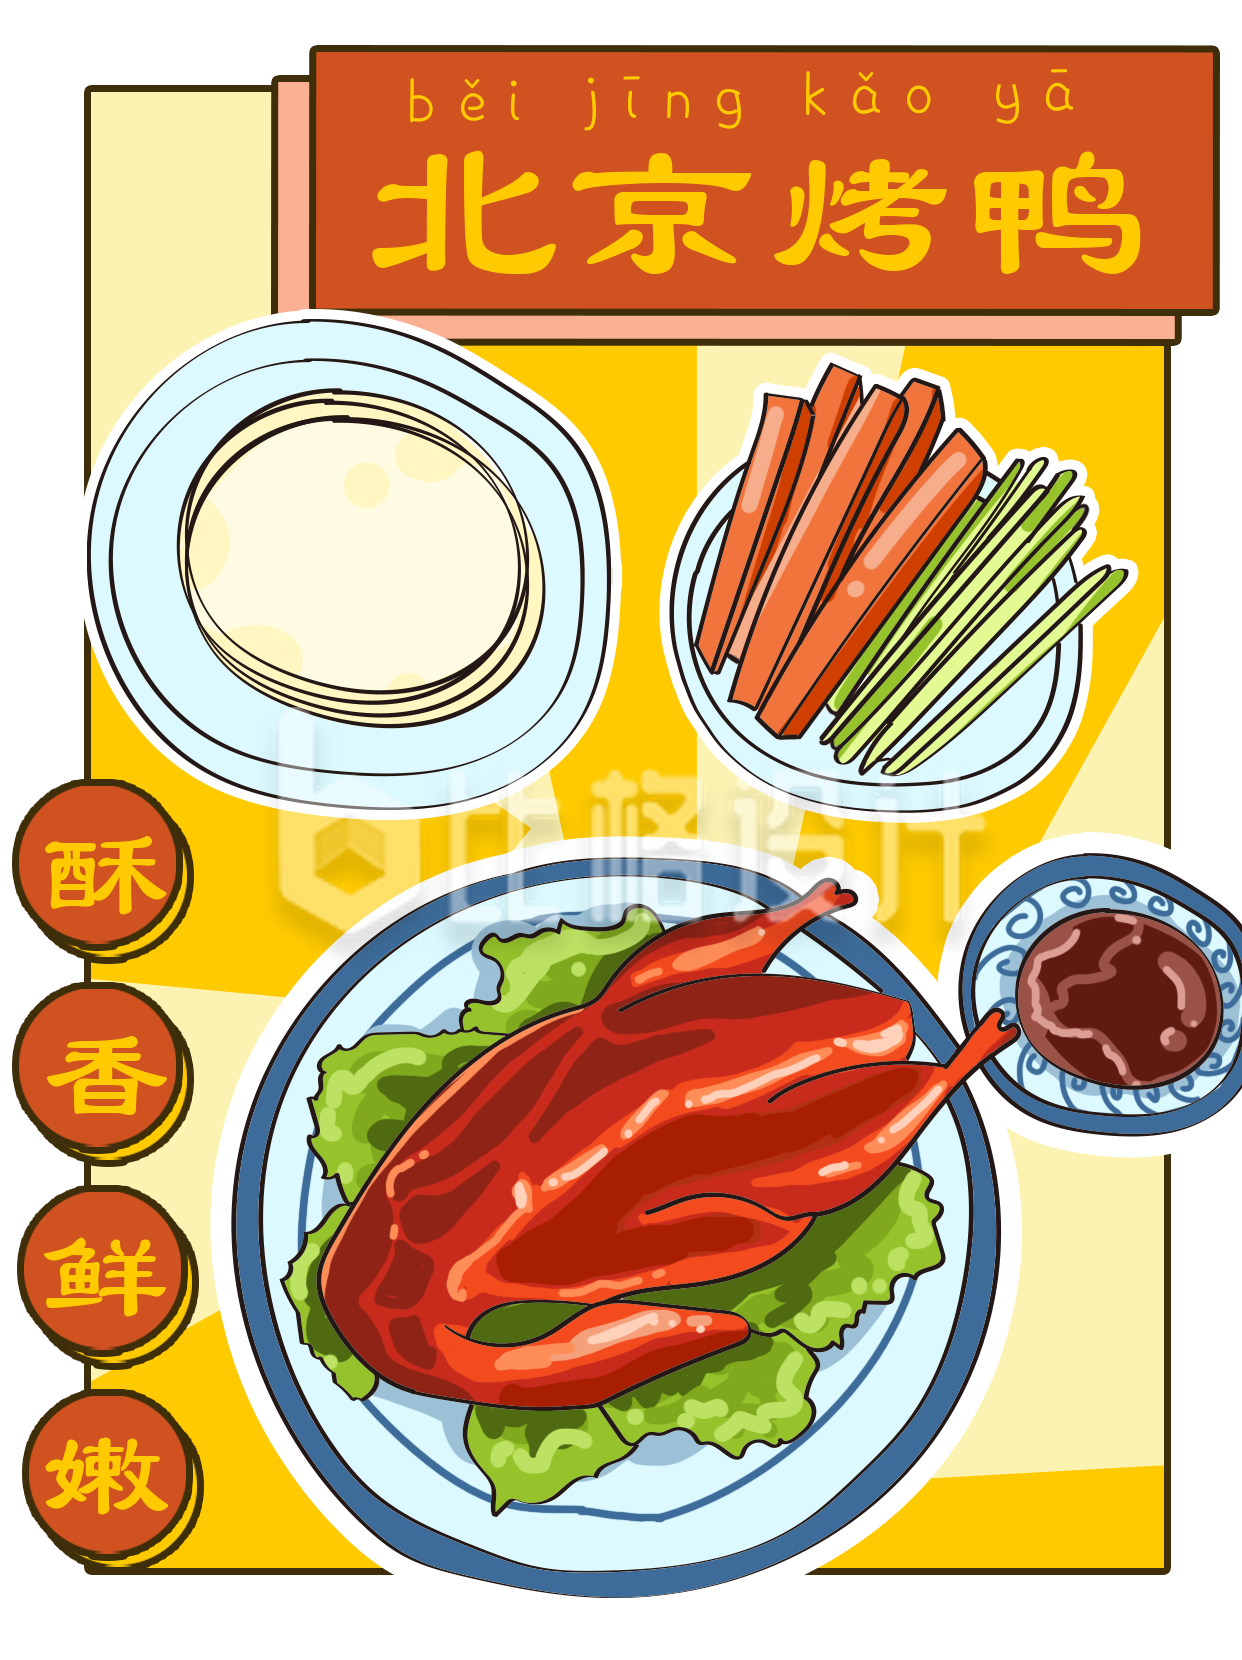 北京烤鸭漫画日系美食小红书封面